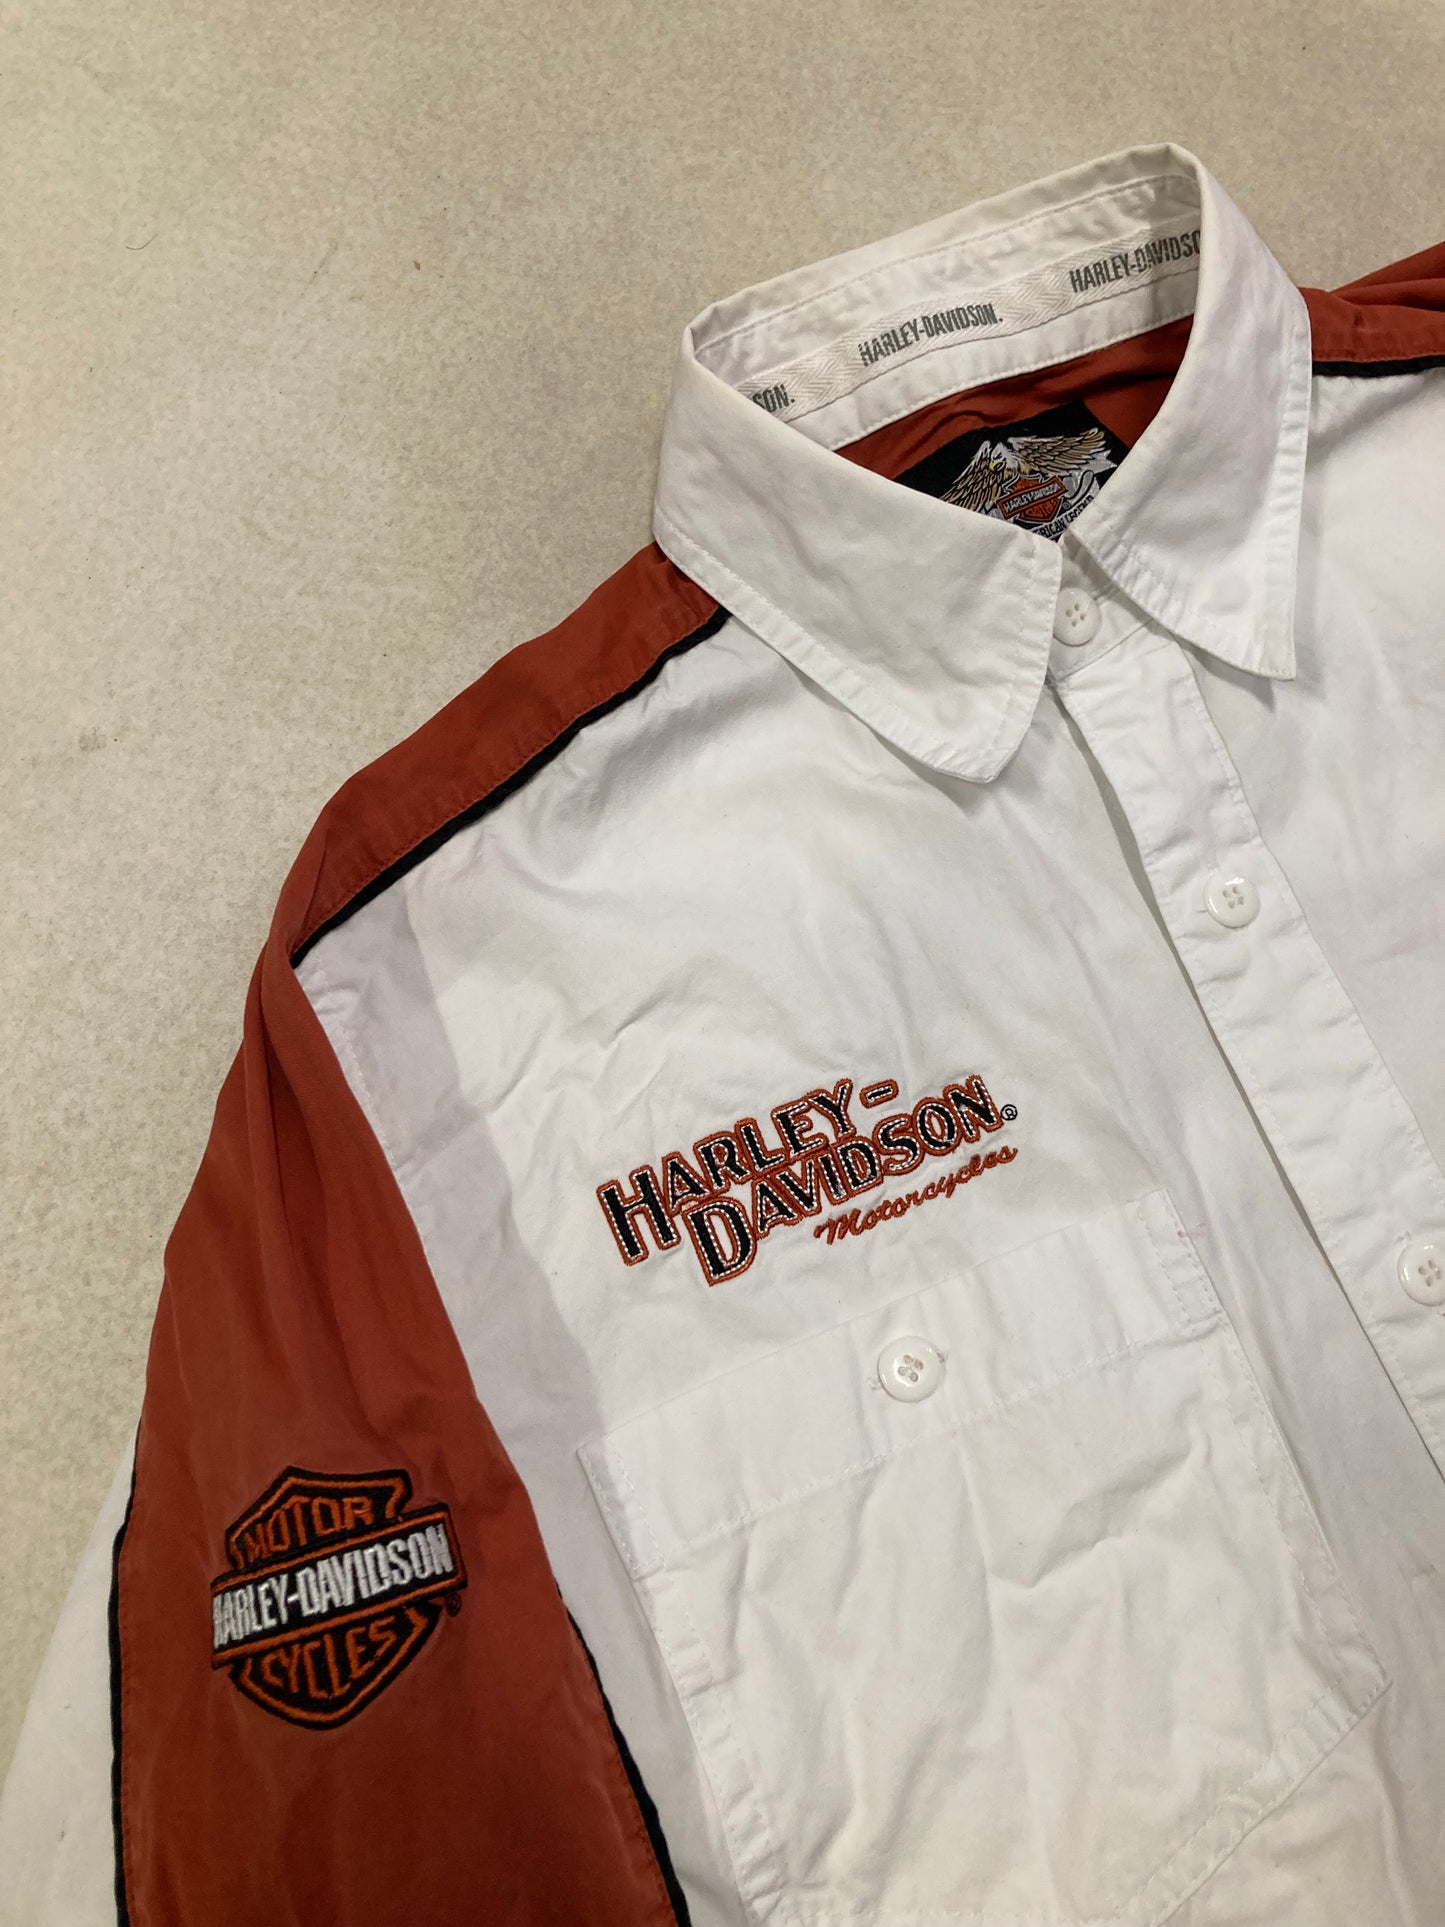 Camisa ‘All Embroidered’ Harley Davidson 00s Vintage - M